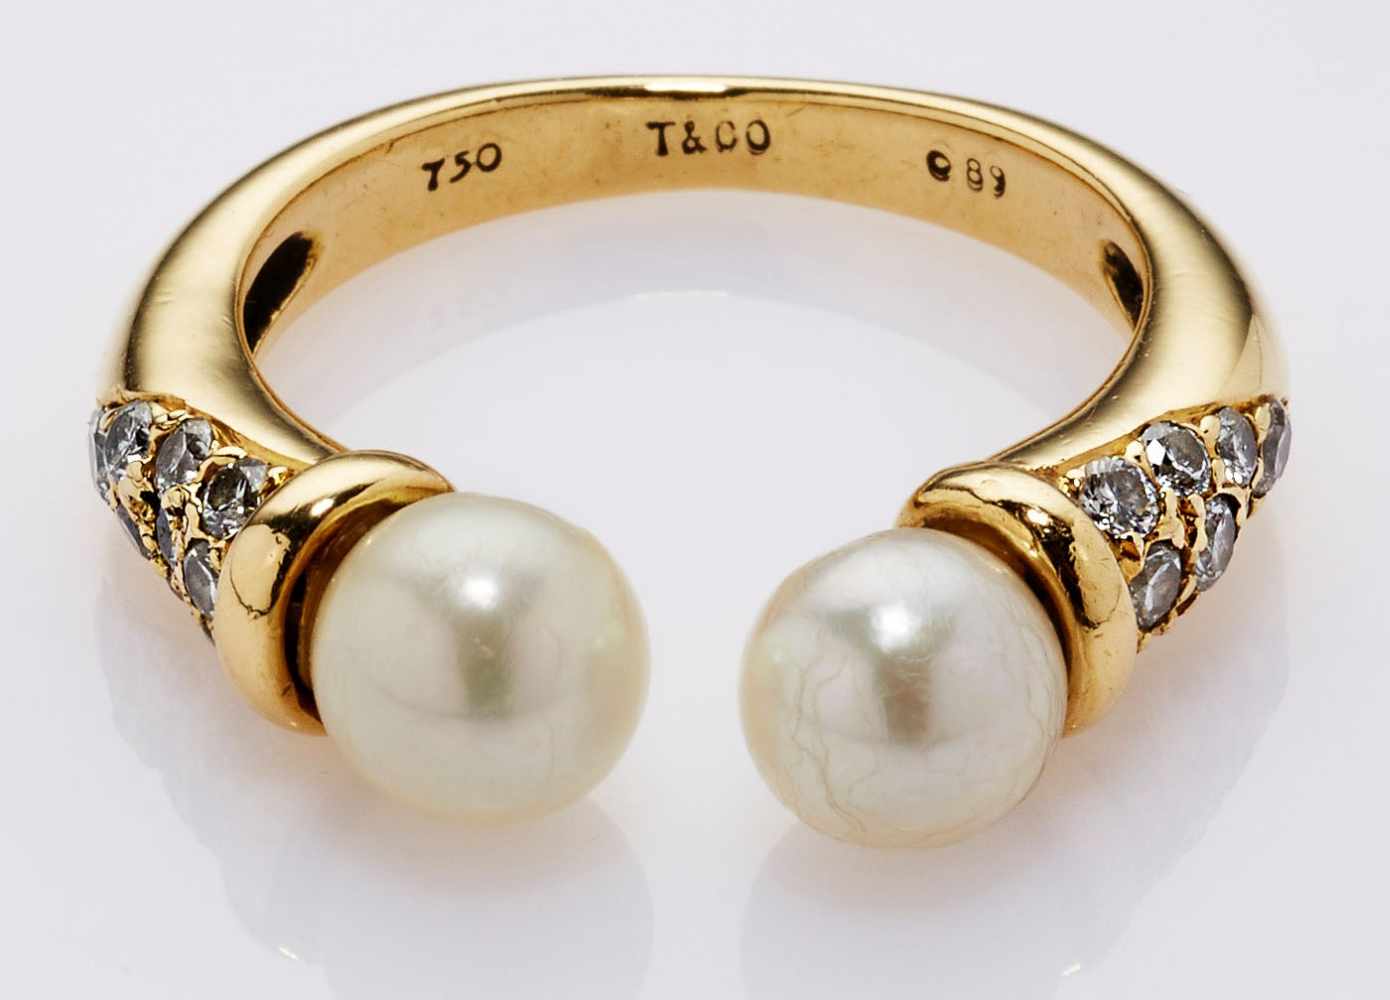 Vintage-Ring Tiffany & Co.18 kt GG, offener Ring besetzt mit 18 Brillanten von zus. ca. 0,89 ct